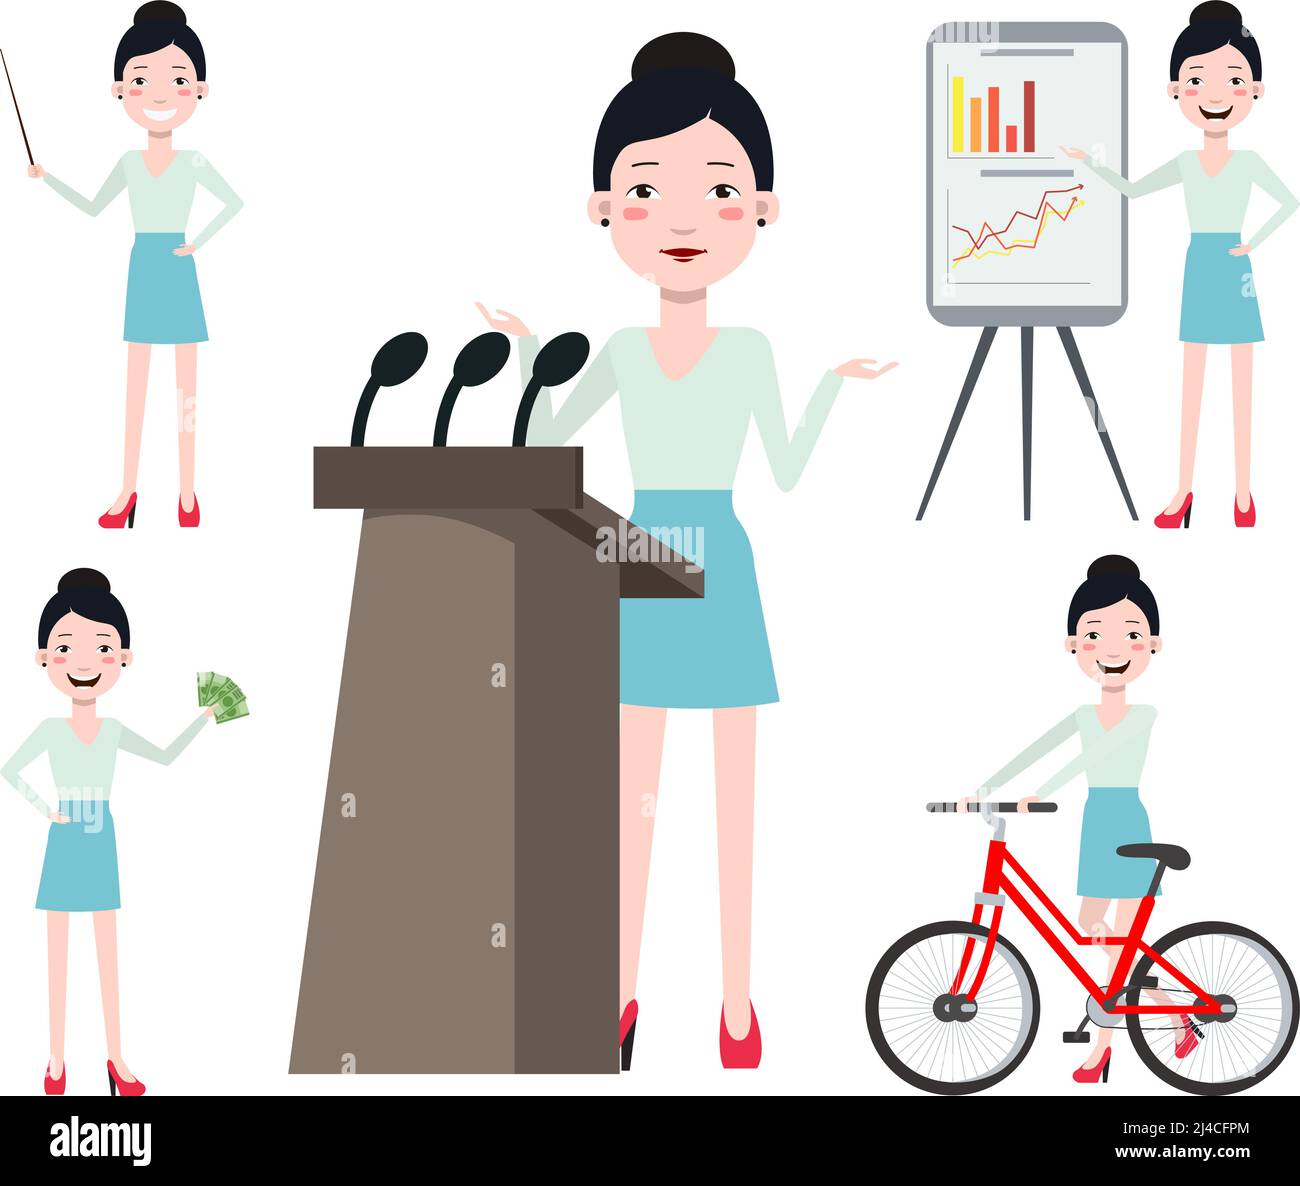 Weibliche Konferenzsprecherin mit unterschiedlichen Posen, Emotionen, Gesten. Radfahren, Präsentation, Lehrer, Geld verdienen. Kann zum Desig verwendet werden Stock Vektor